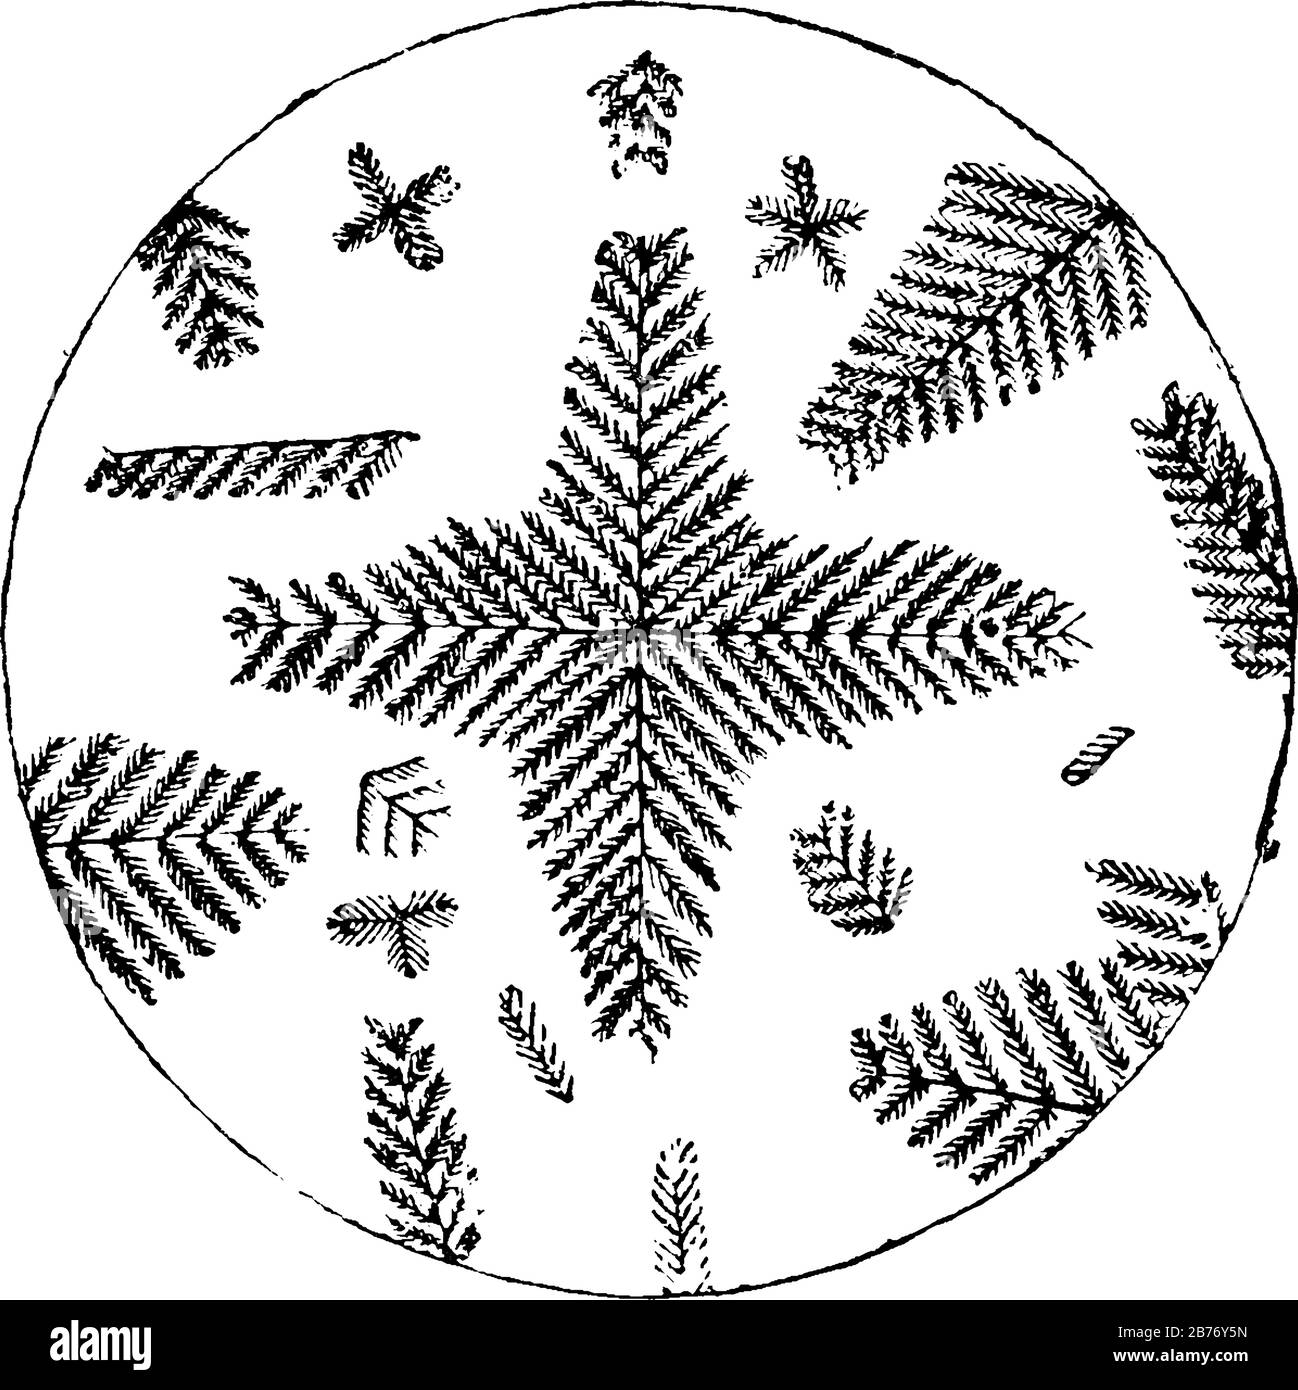 Sezione microscopica di Porfirina artificiale con una tipica forma ad albero multirranato, disegno a linea d'annata o illustrazione dell'incisione. Illustrazione Vettoriale